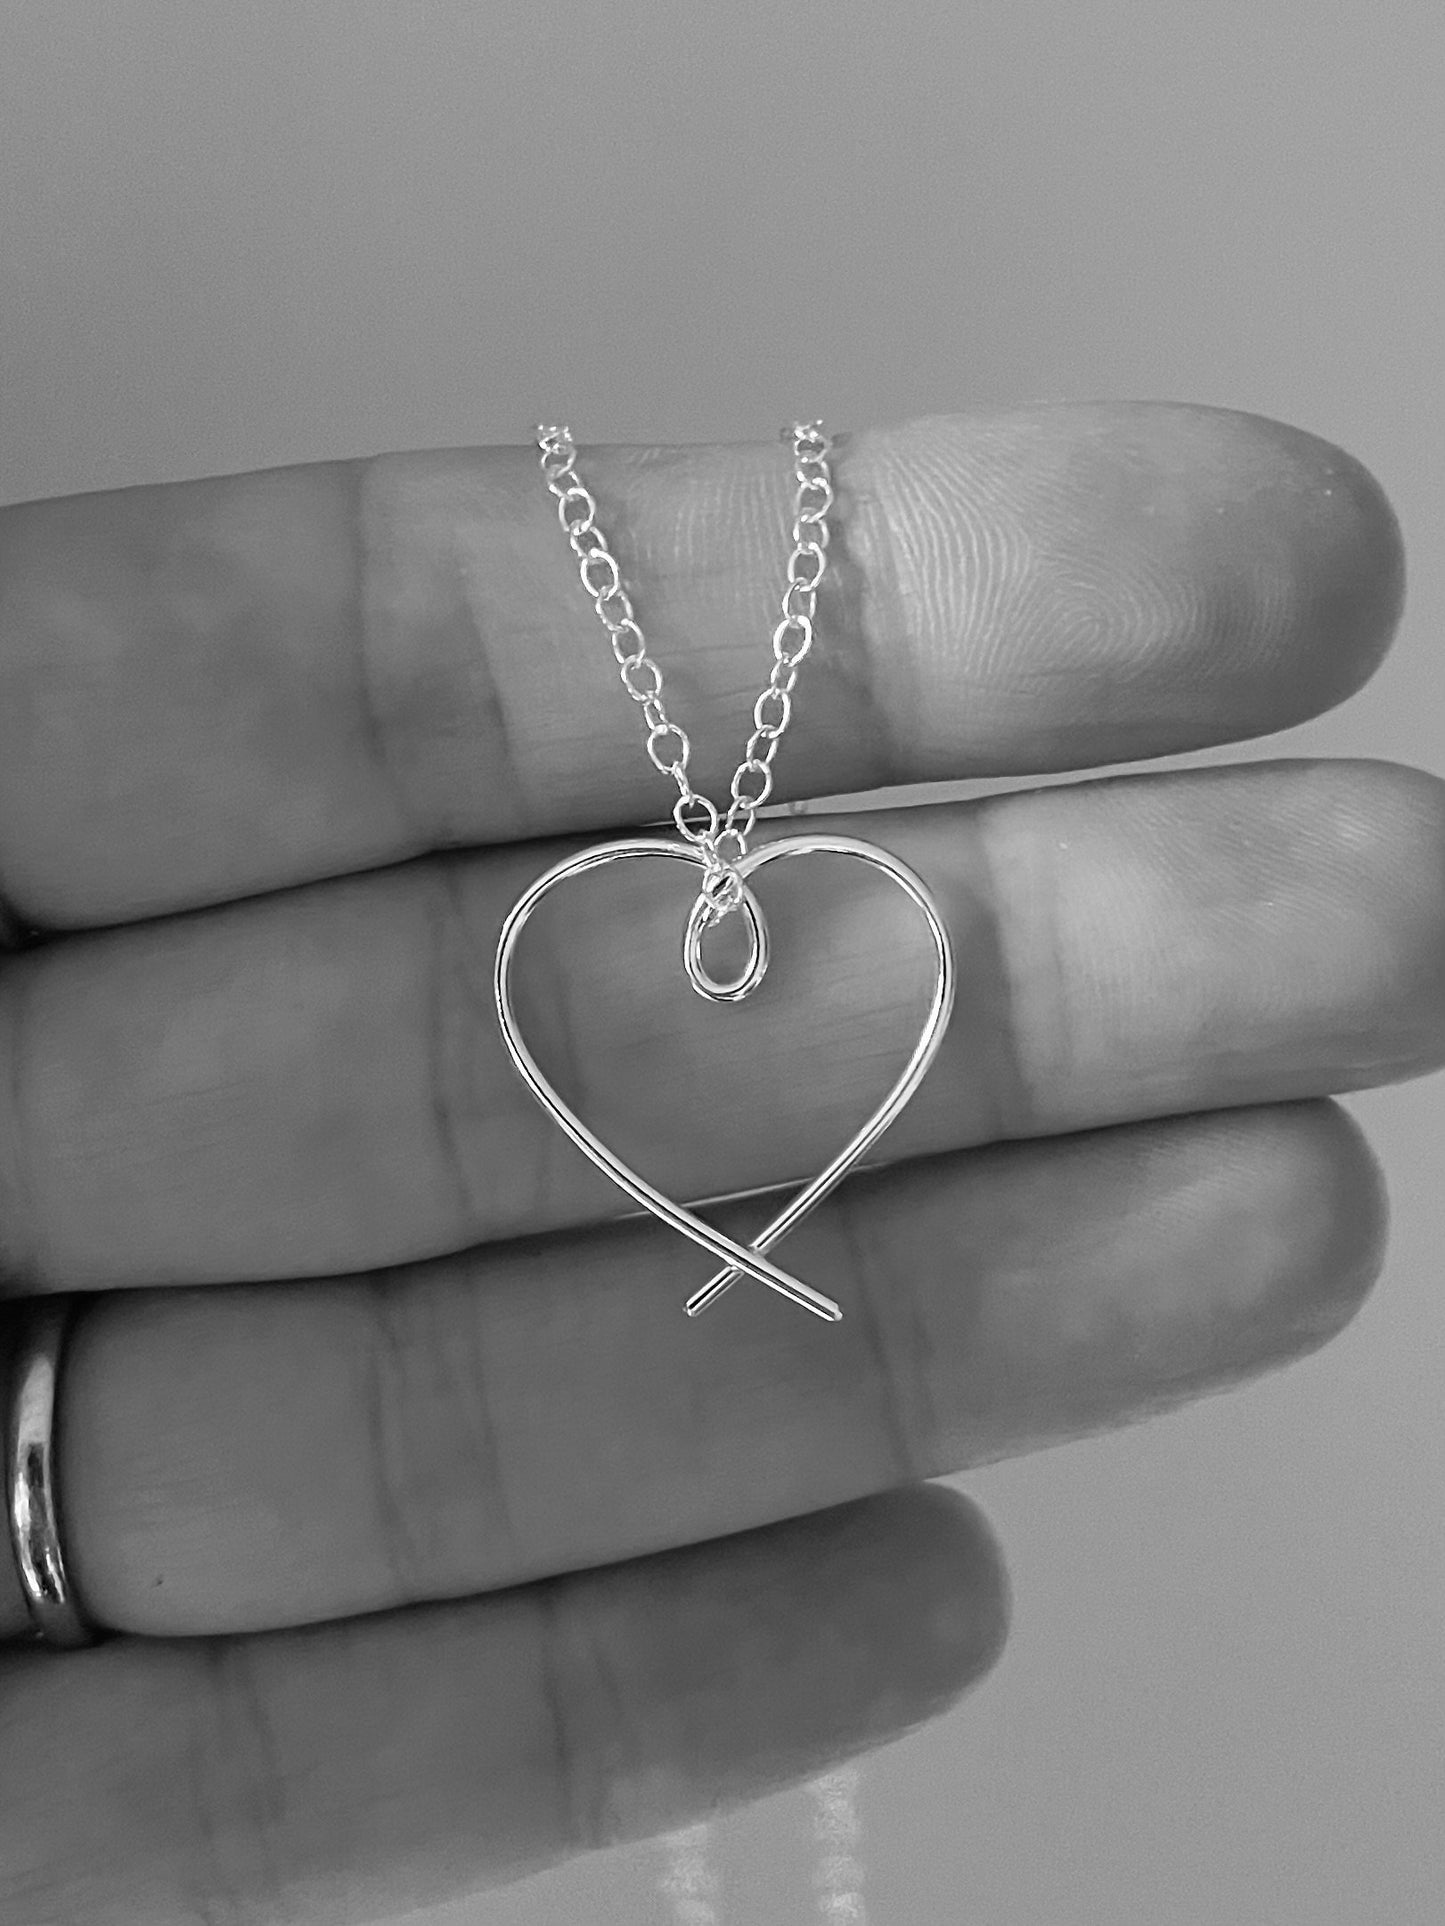 Sterling silver heart jewellery set